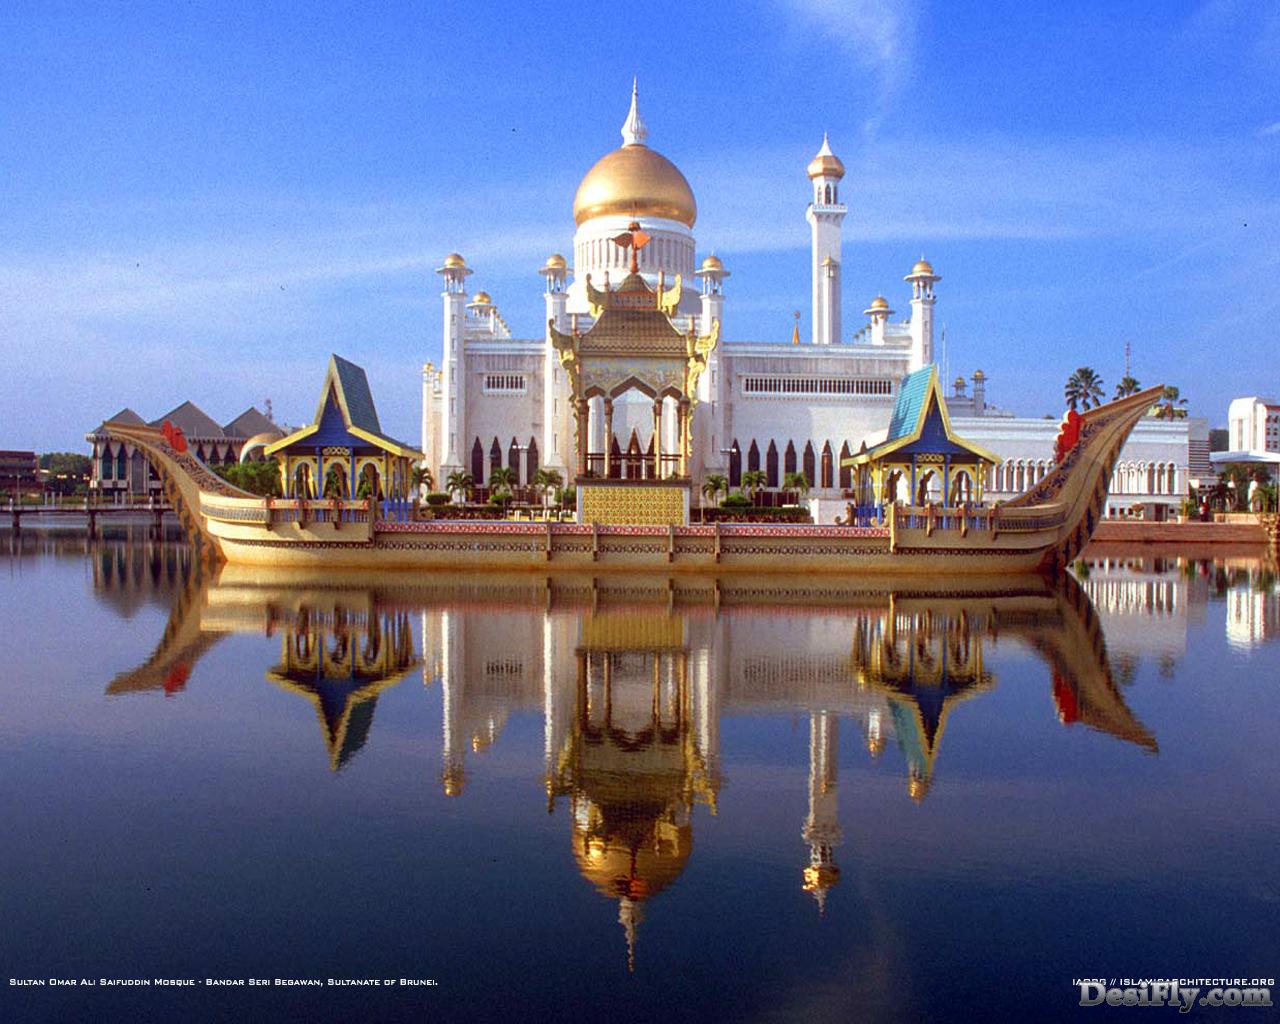 Beautiful Islamic Image